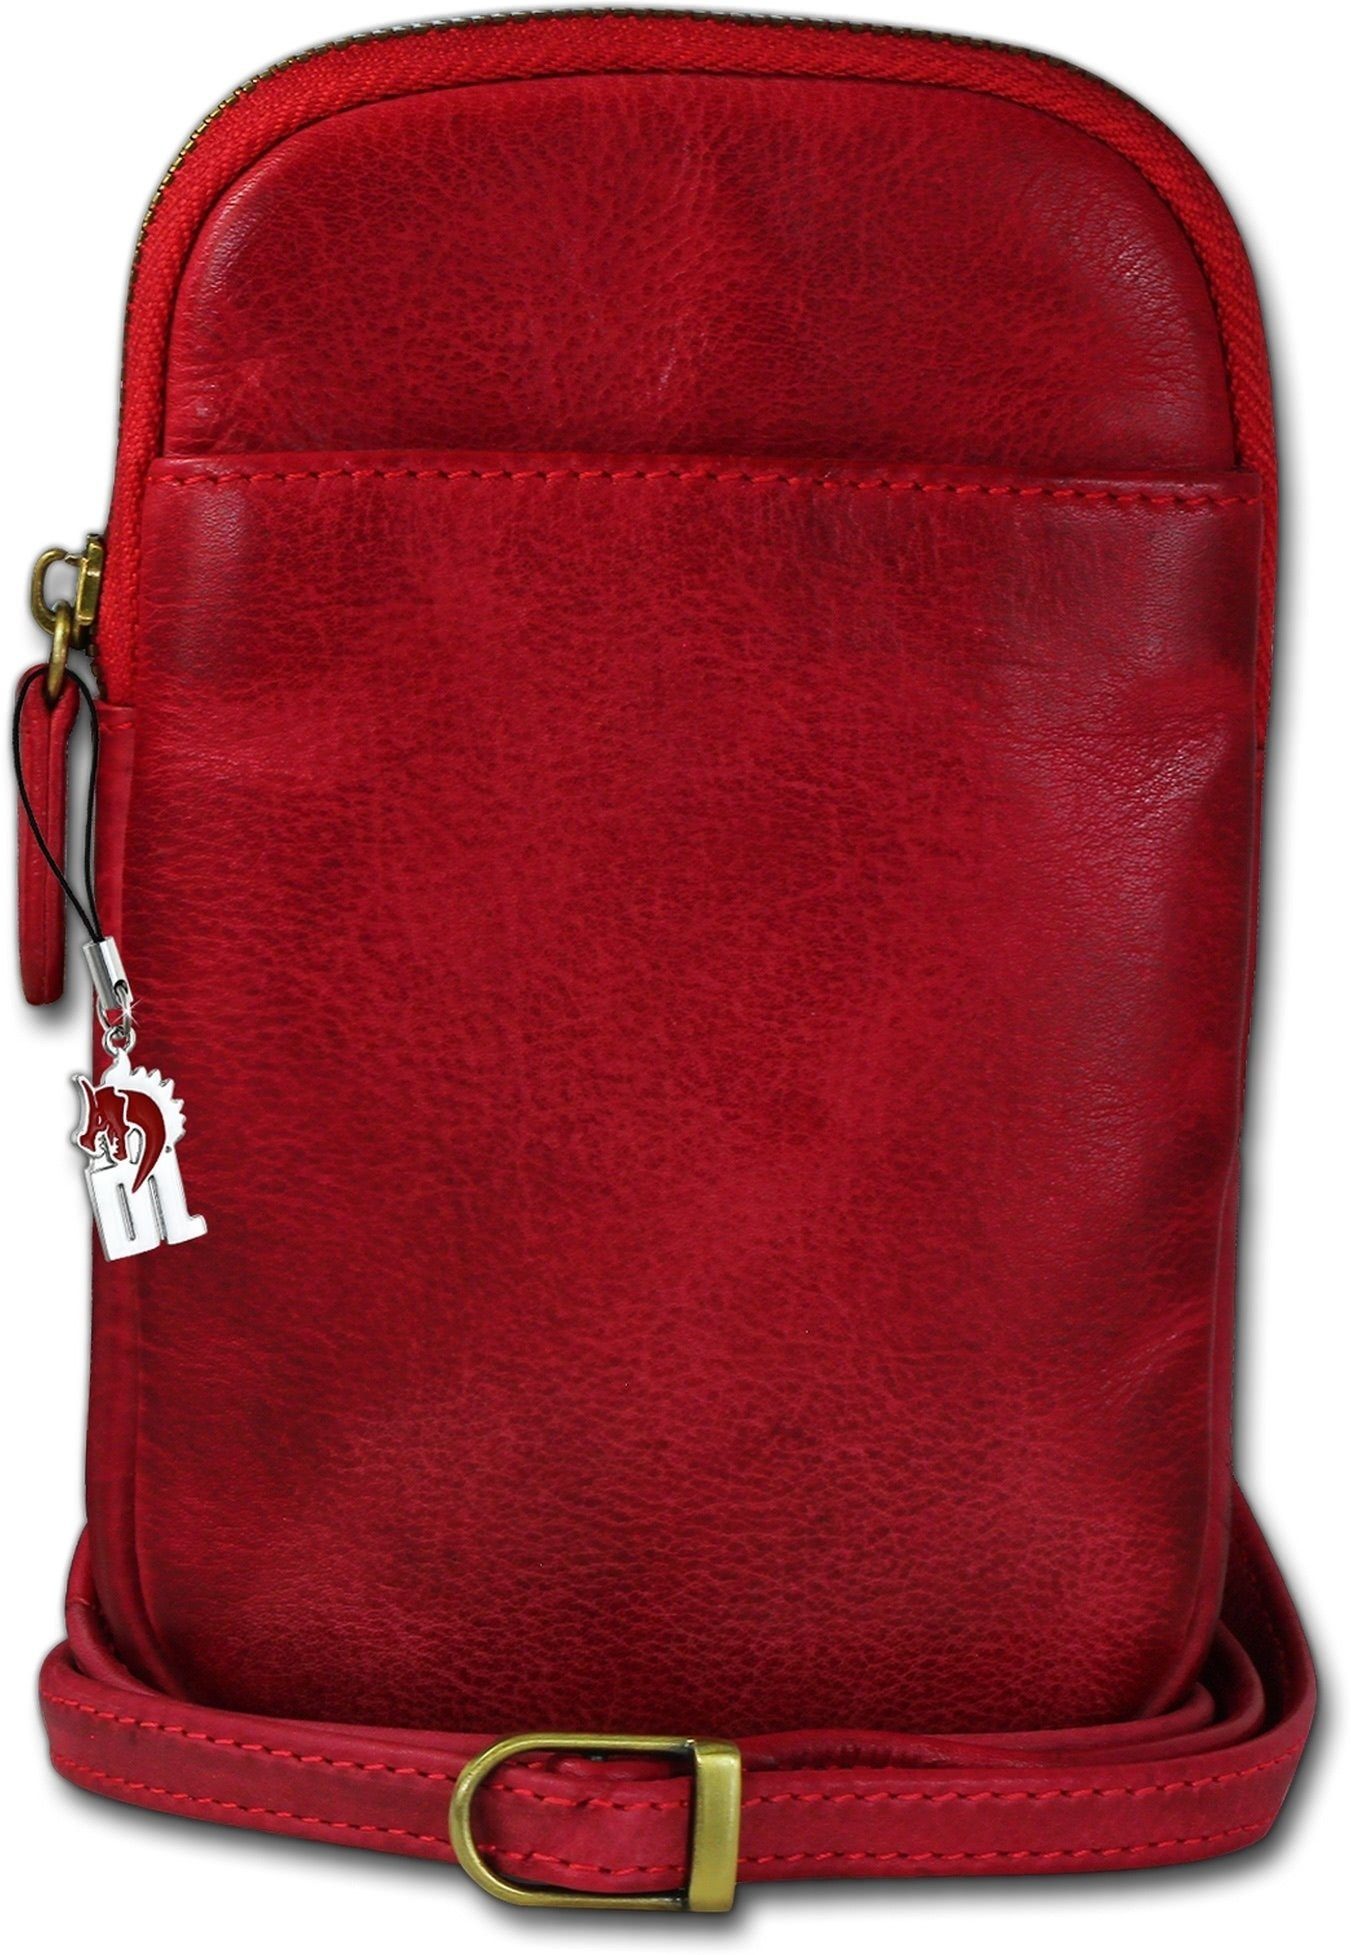 DrachenLeder Umhängetasche DrachenLeder Tasche Damen Handtasche (Umhängetasche, Umhängetasche), unisex Handtasche, Umhängetasche Echtleder rot, Größe ca. 13cm